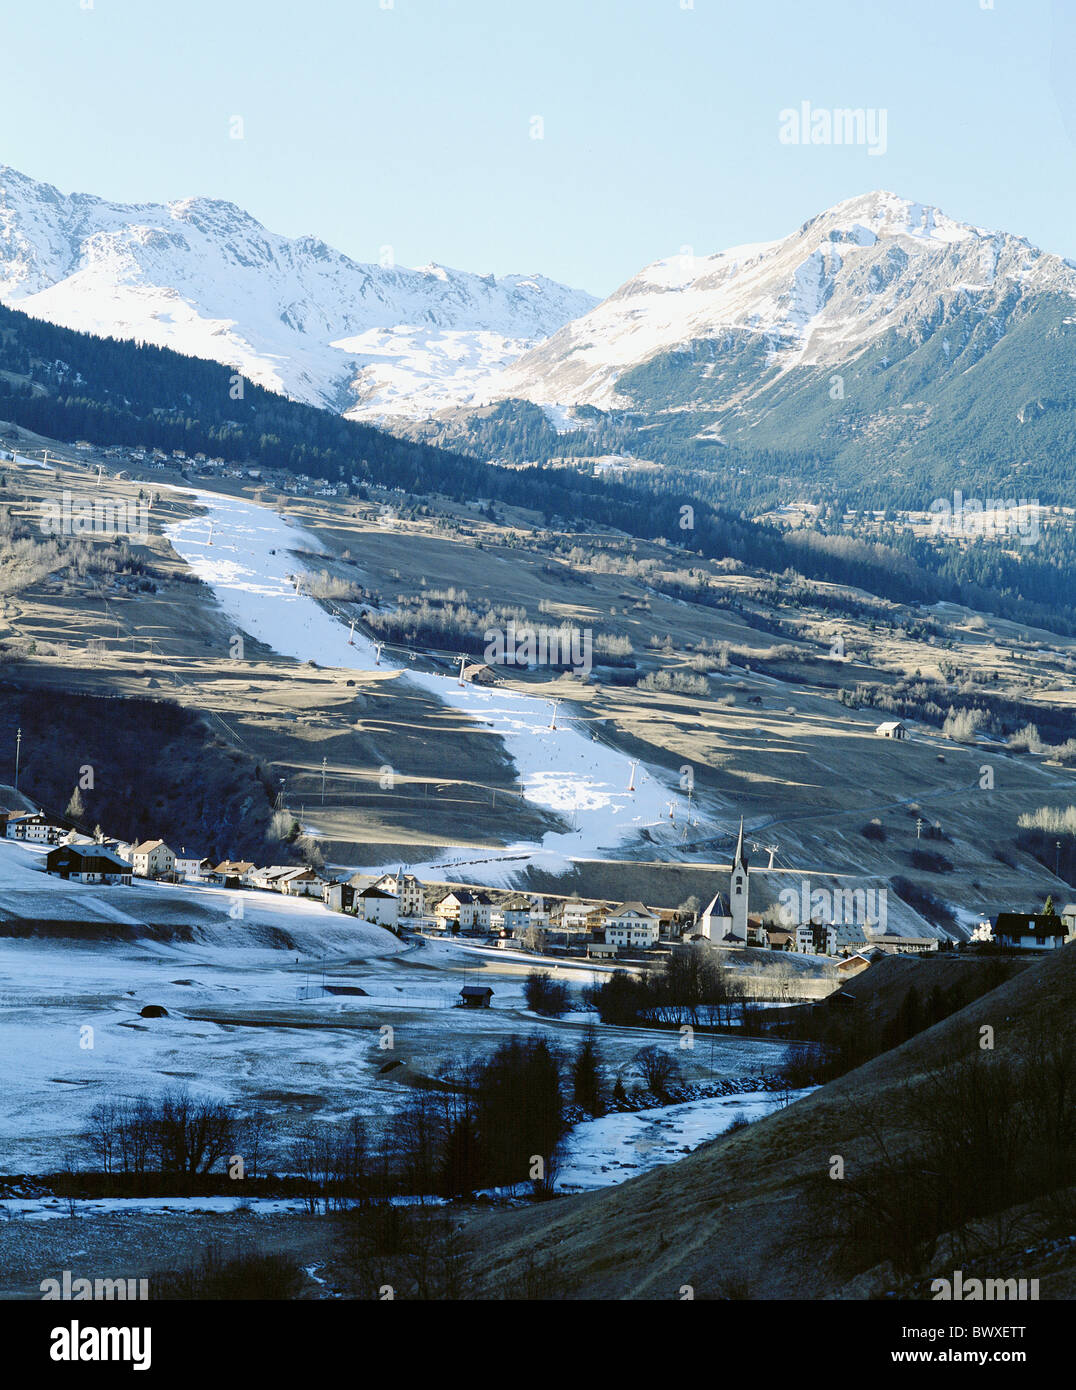 Alpen Schneekanonen Alpen Berge künstliche Beschneiung der Schweiz Europa Wintersport Sport Winter mo Stockfoto